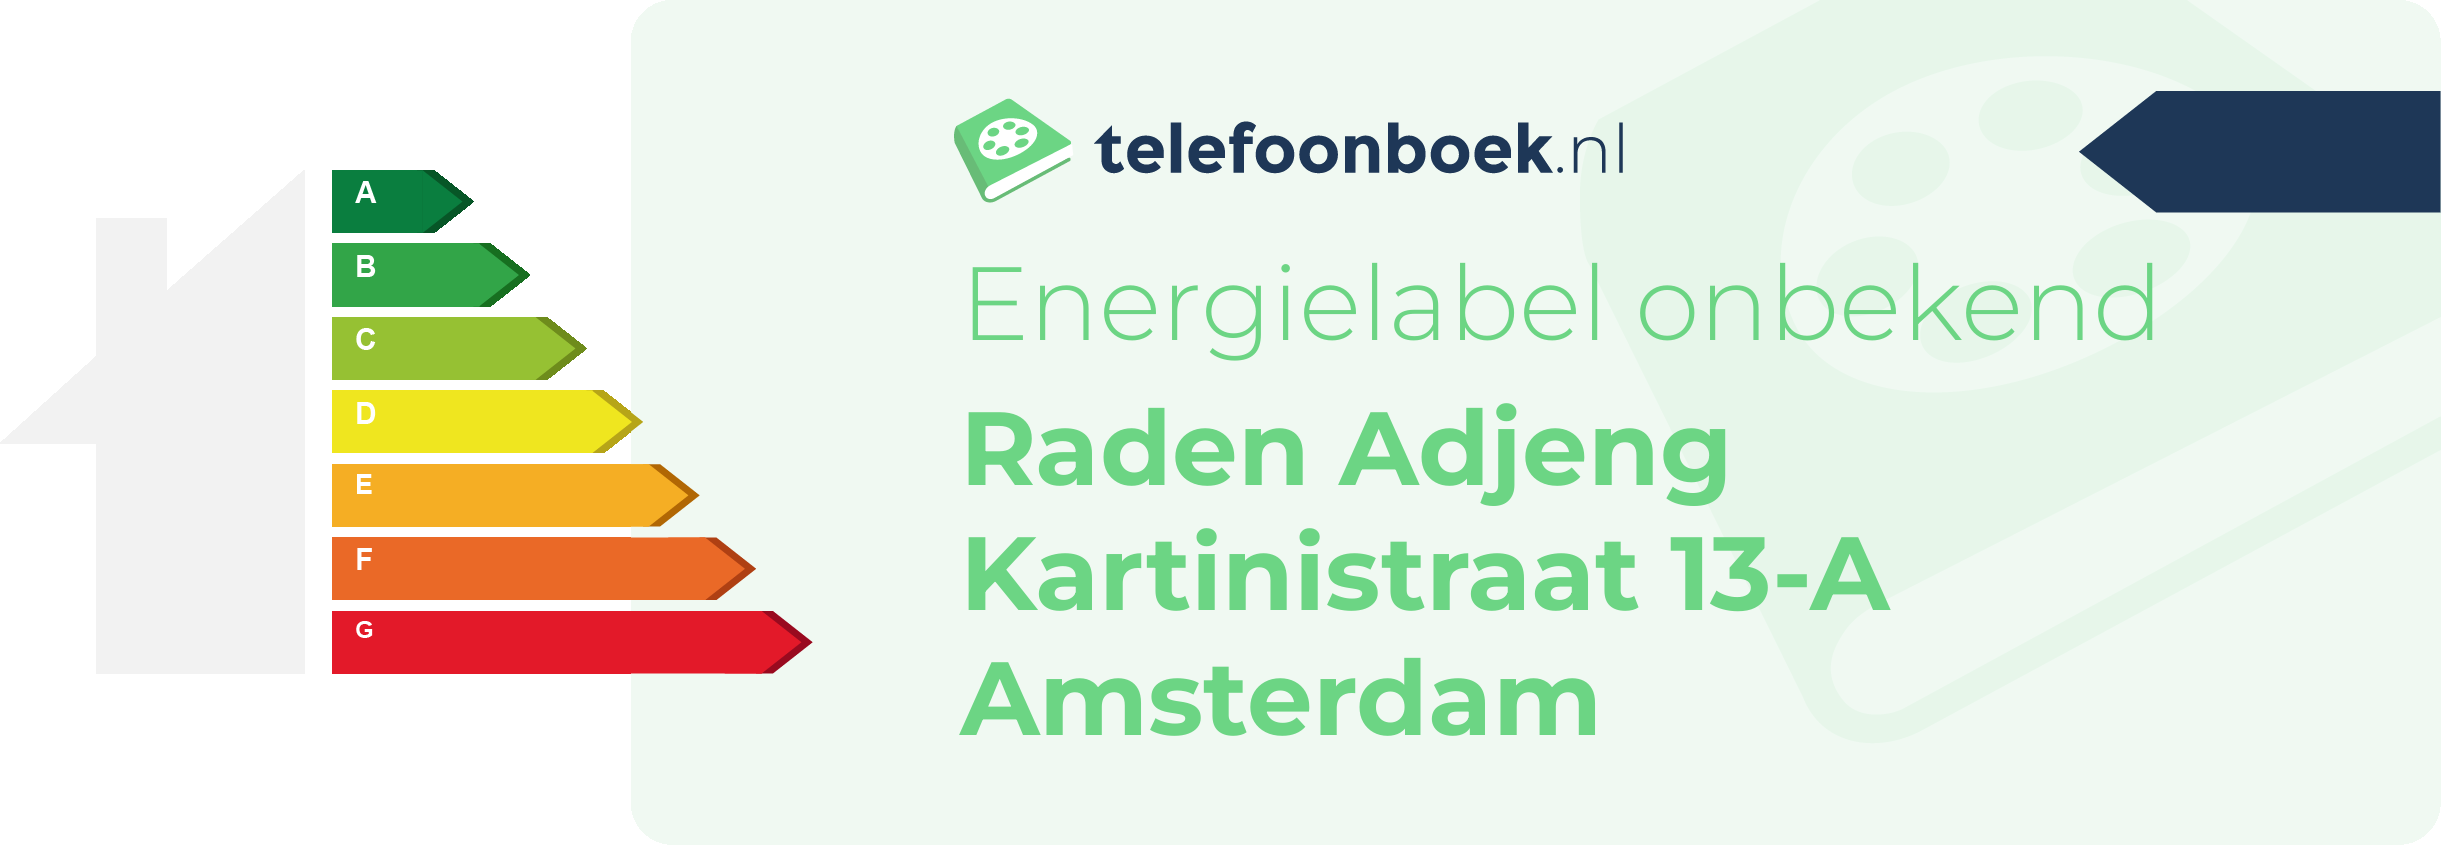 Energielabel Raden Adjeng Kartinistraat 13-A Amsterdam